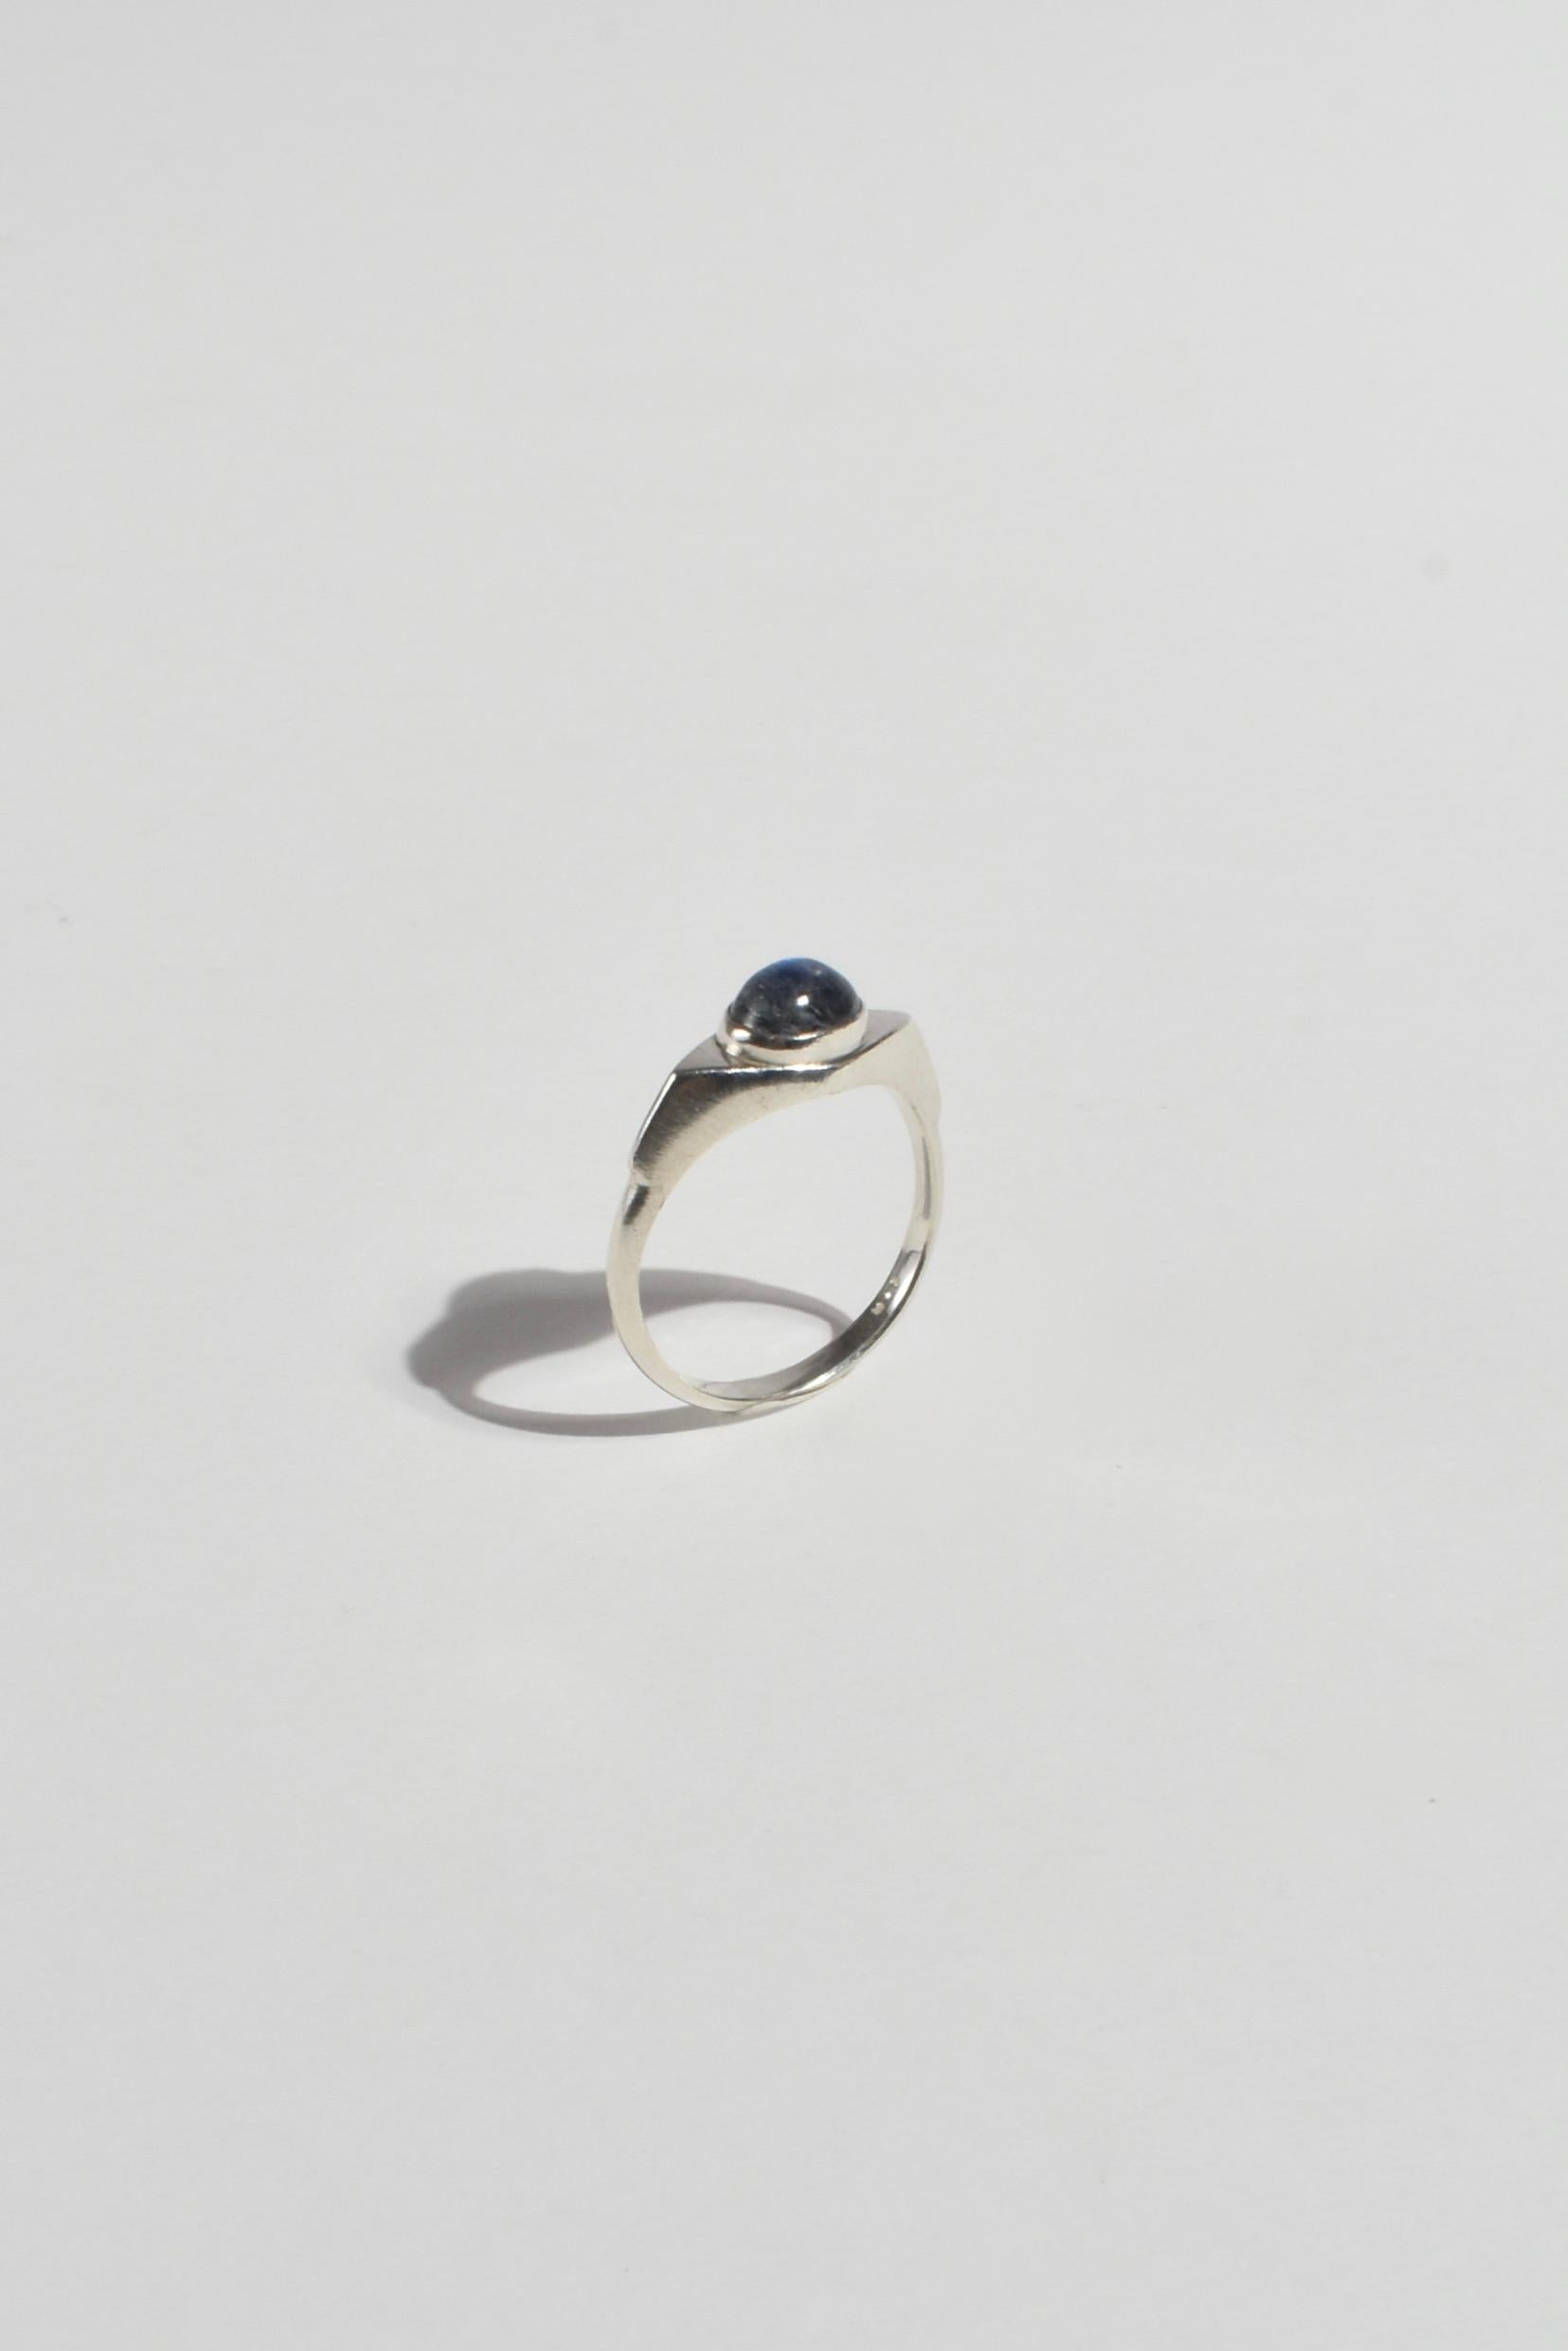 Cabochon Angular Labradorite Ring